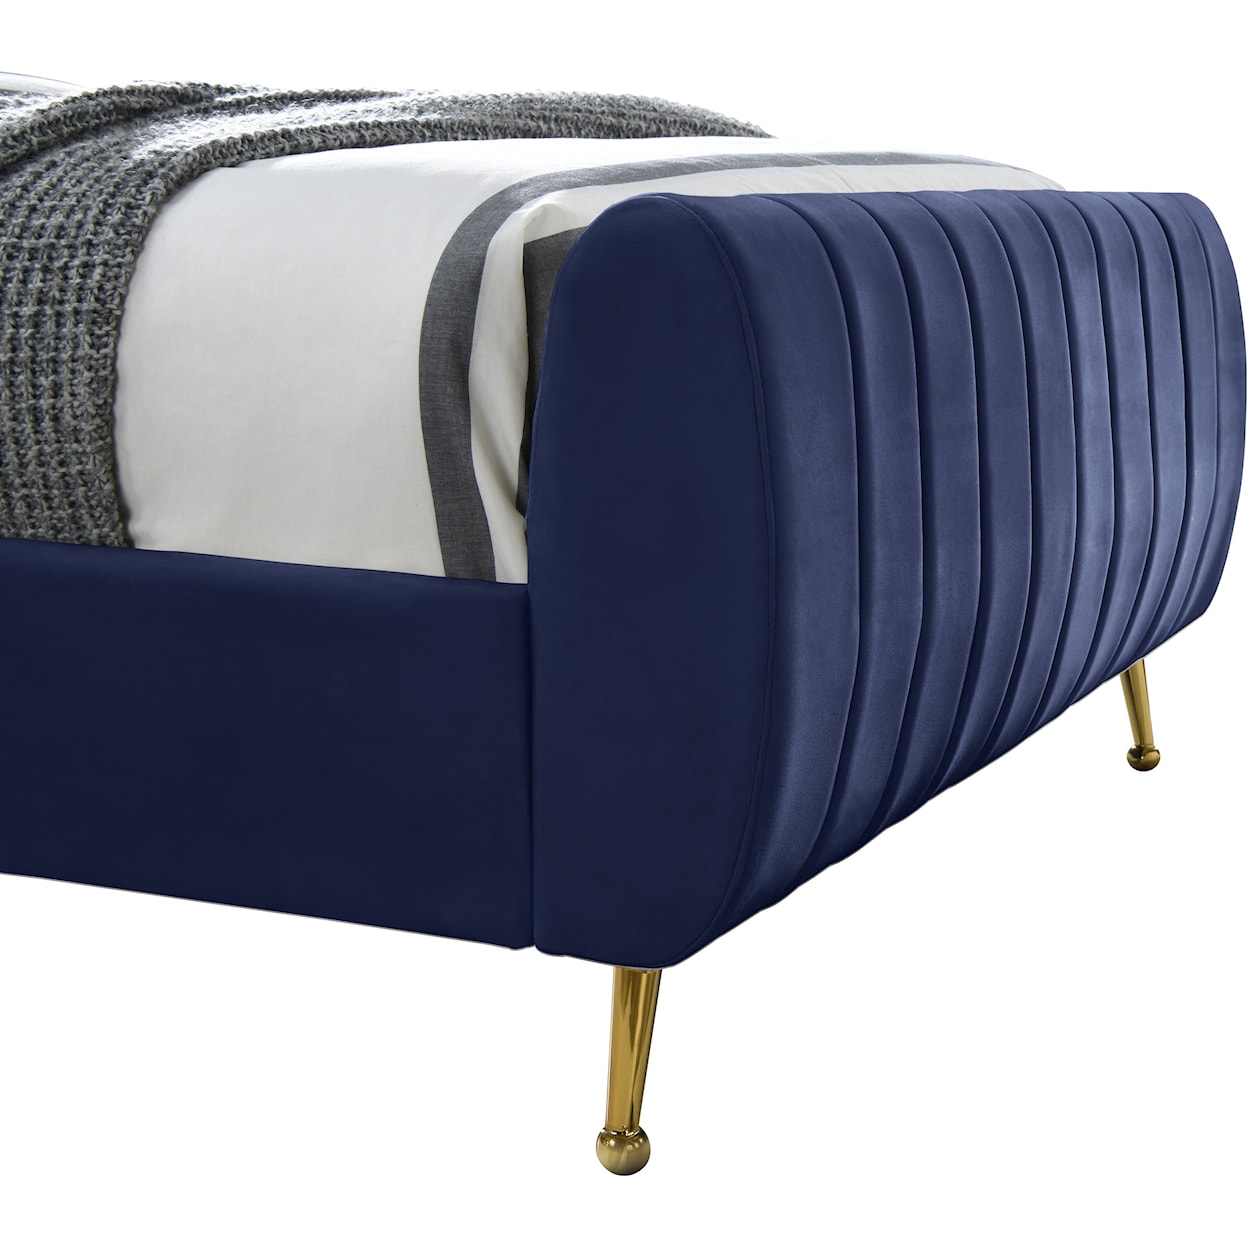 Meridian Furniture Zara Queen Bed
